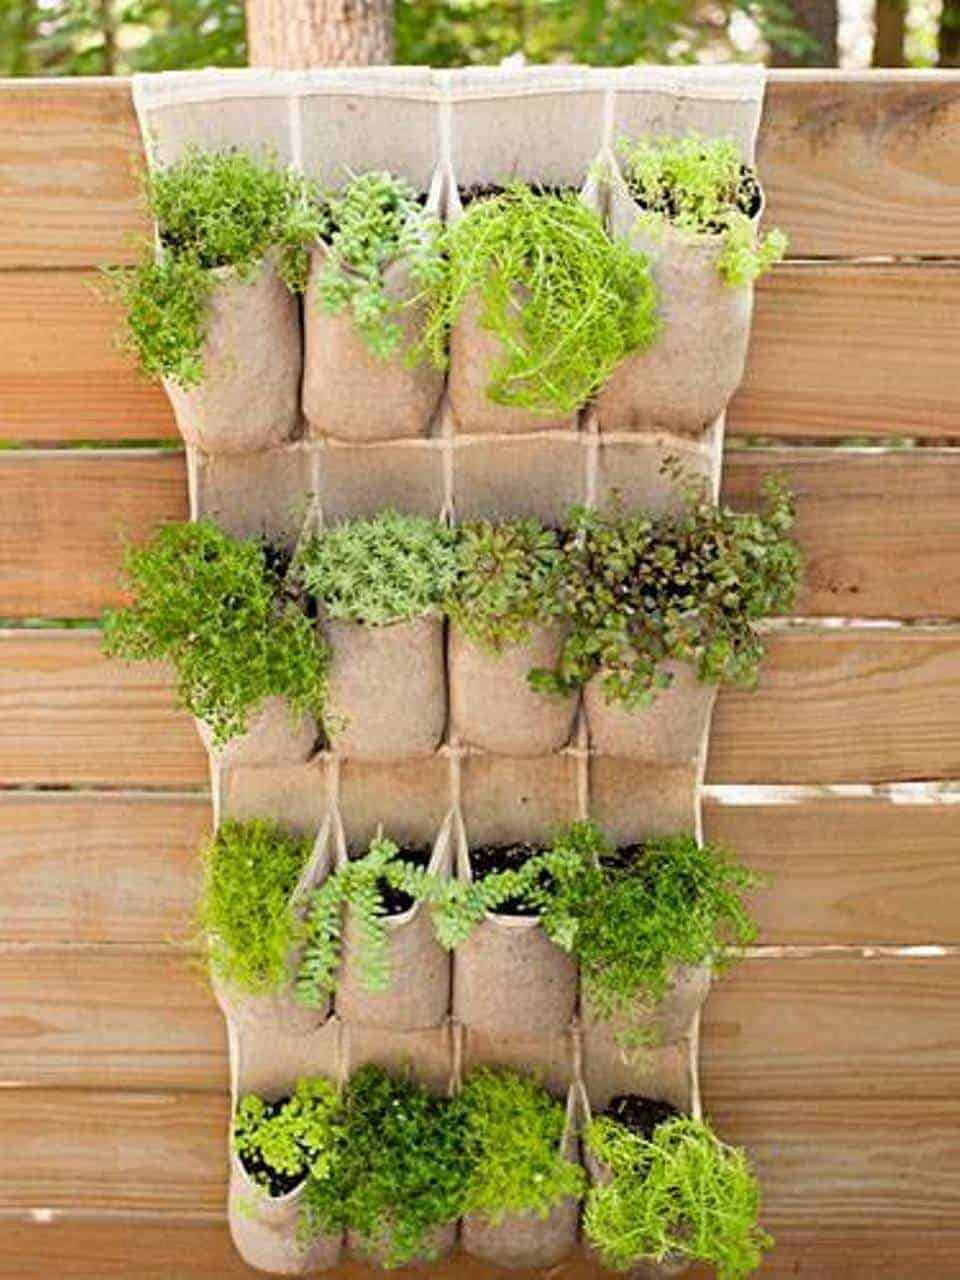 Plants in Pockets - Smart Small Garden Ideas